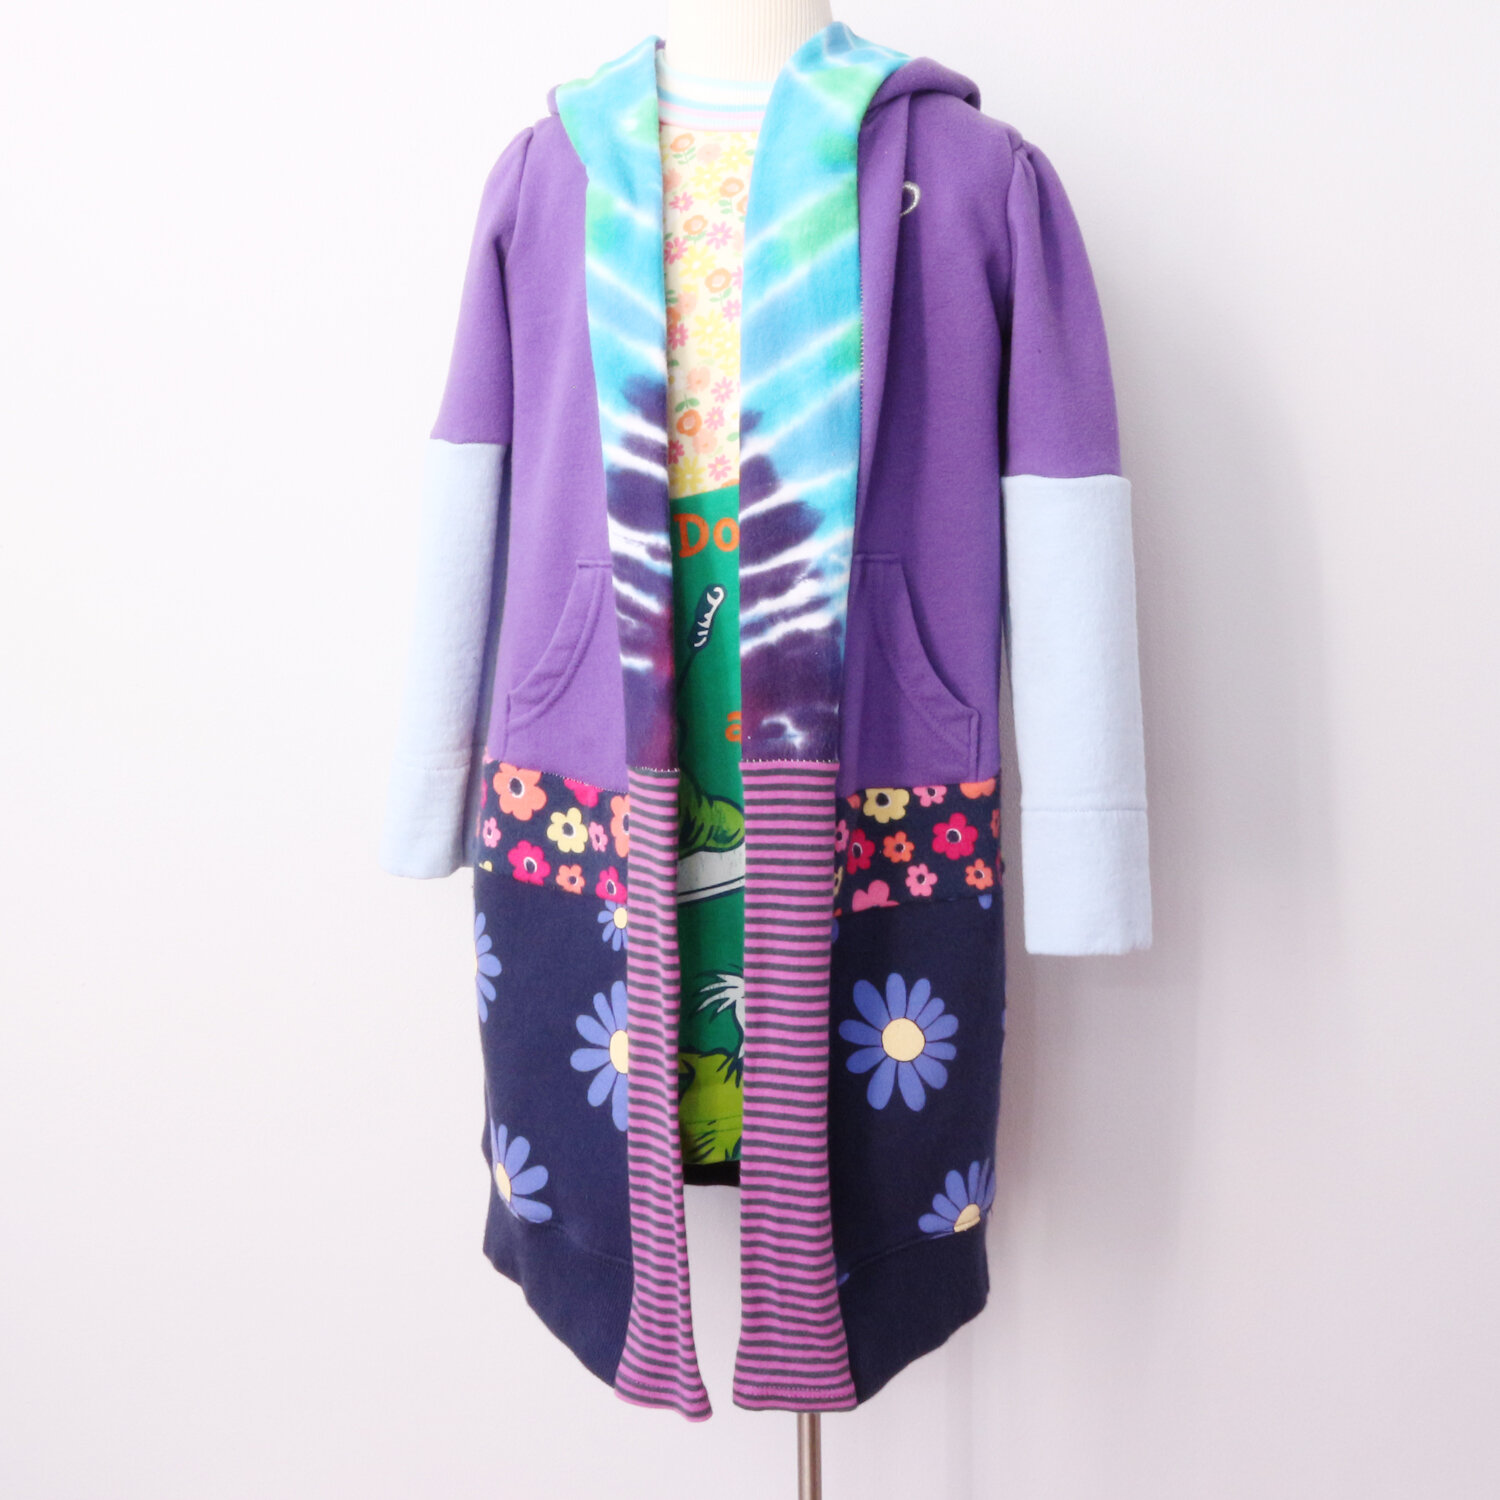 form 4T purple:blue:floral:cardigan:hoodie:robe.jpg